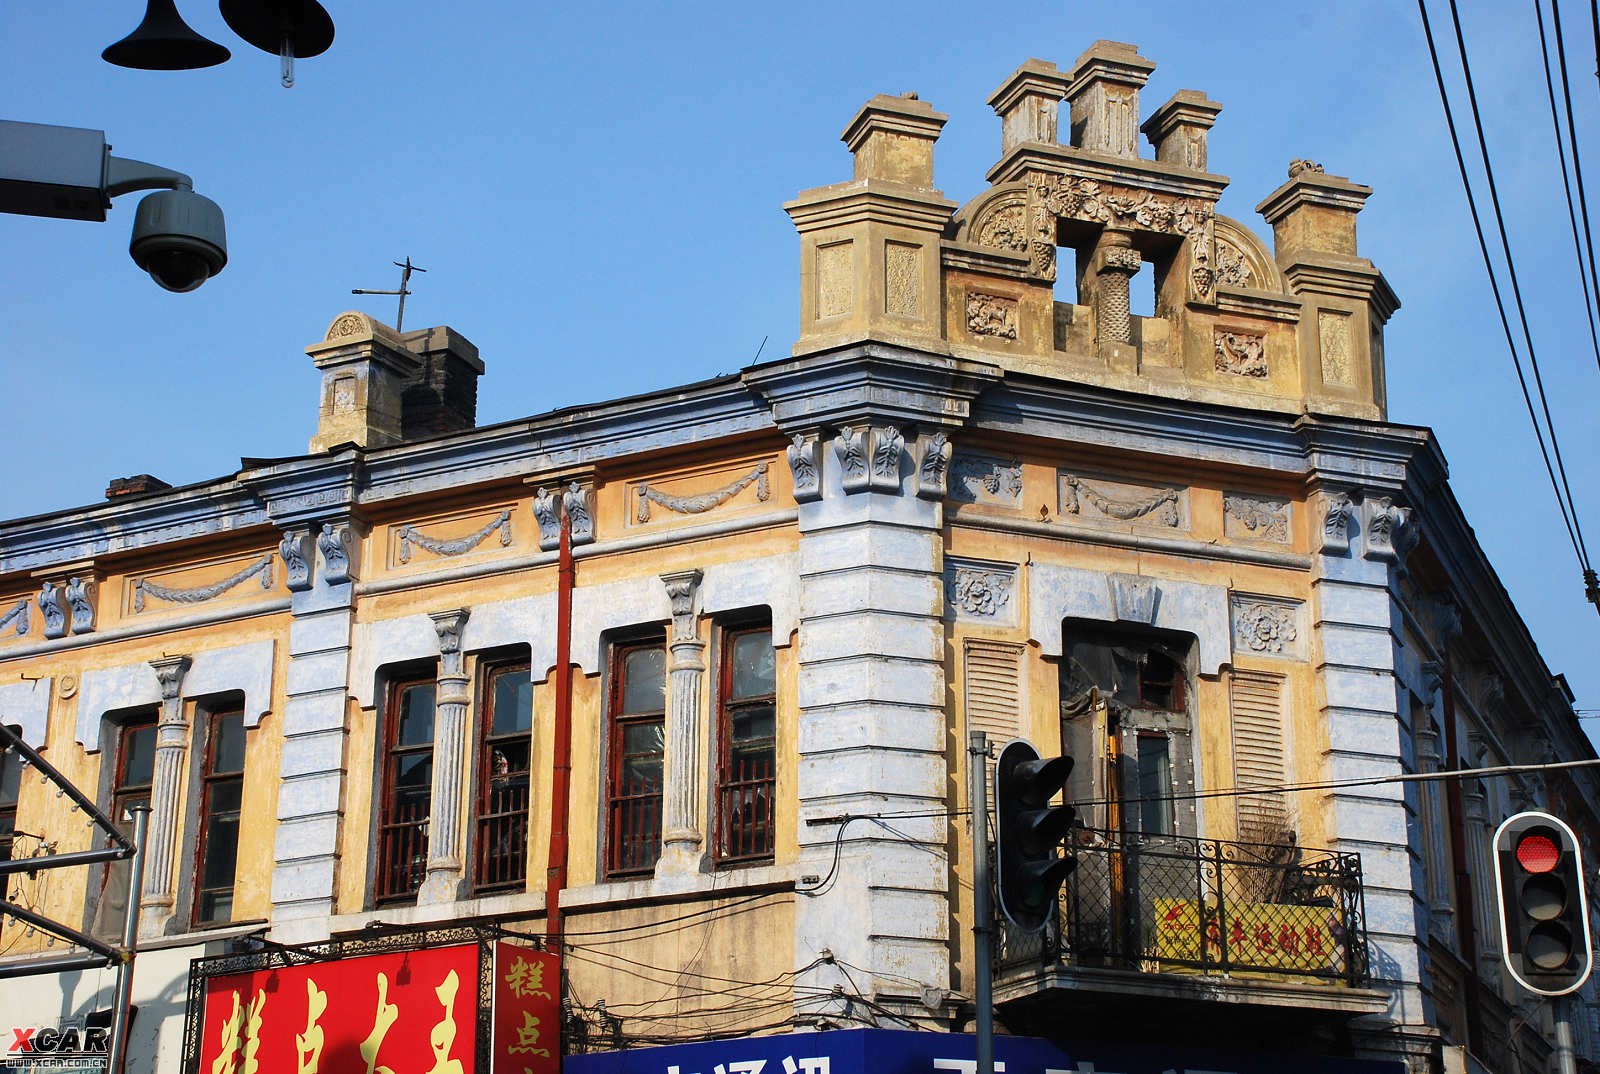 哈尔滨市是近代中西文化交融的历史文化名城,以俄罗斯式,新艺术运动